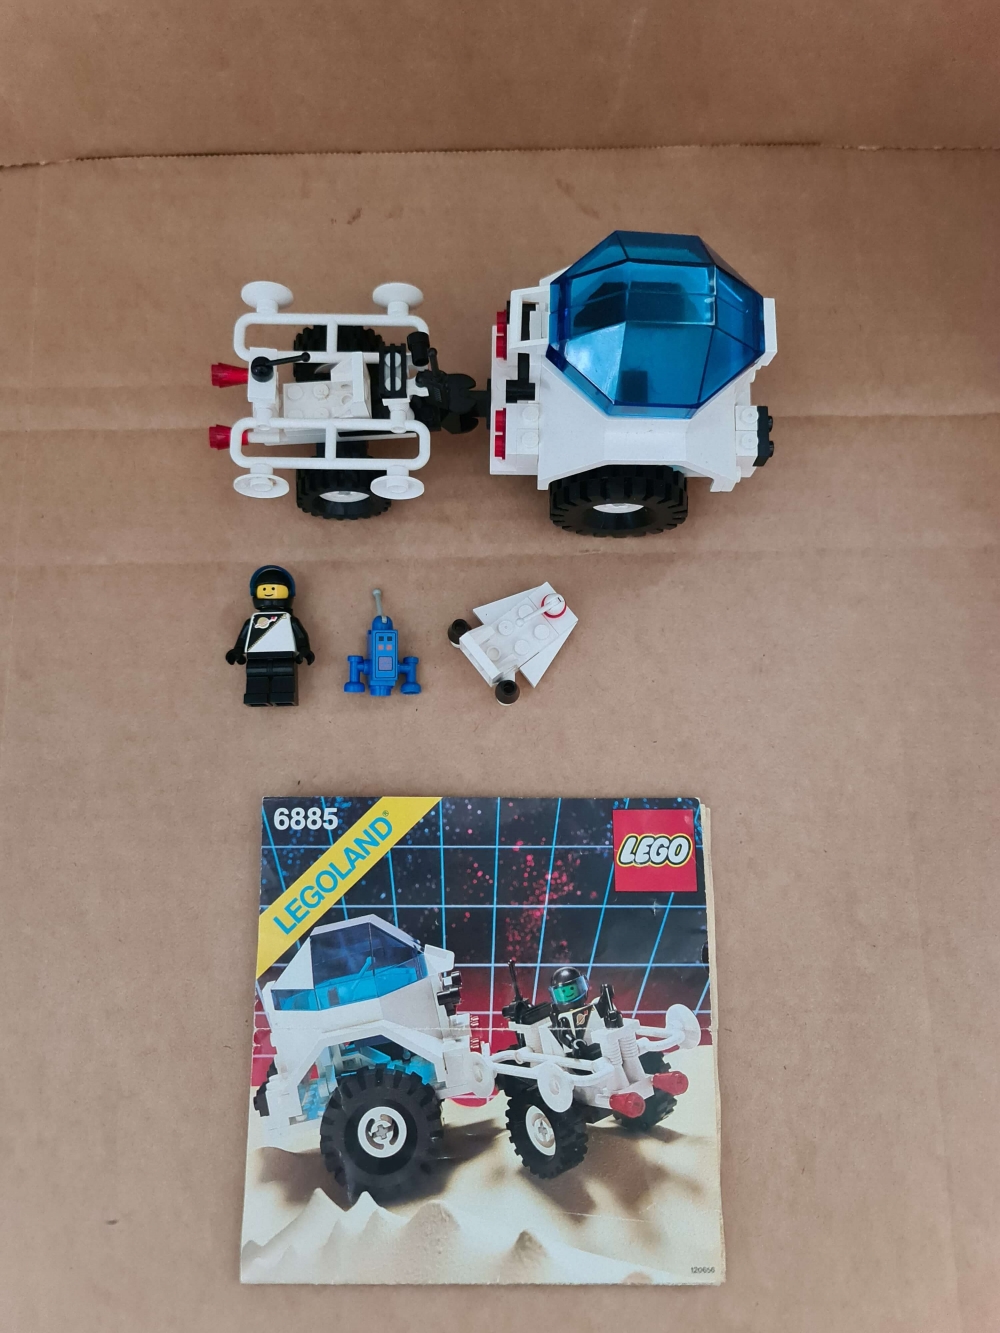 Sett 6885 fra Lego Space : Futuron serien.
Meget pent.
Komplett med manual.